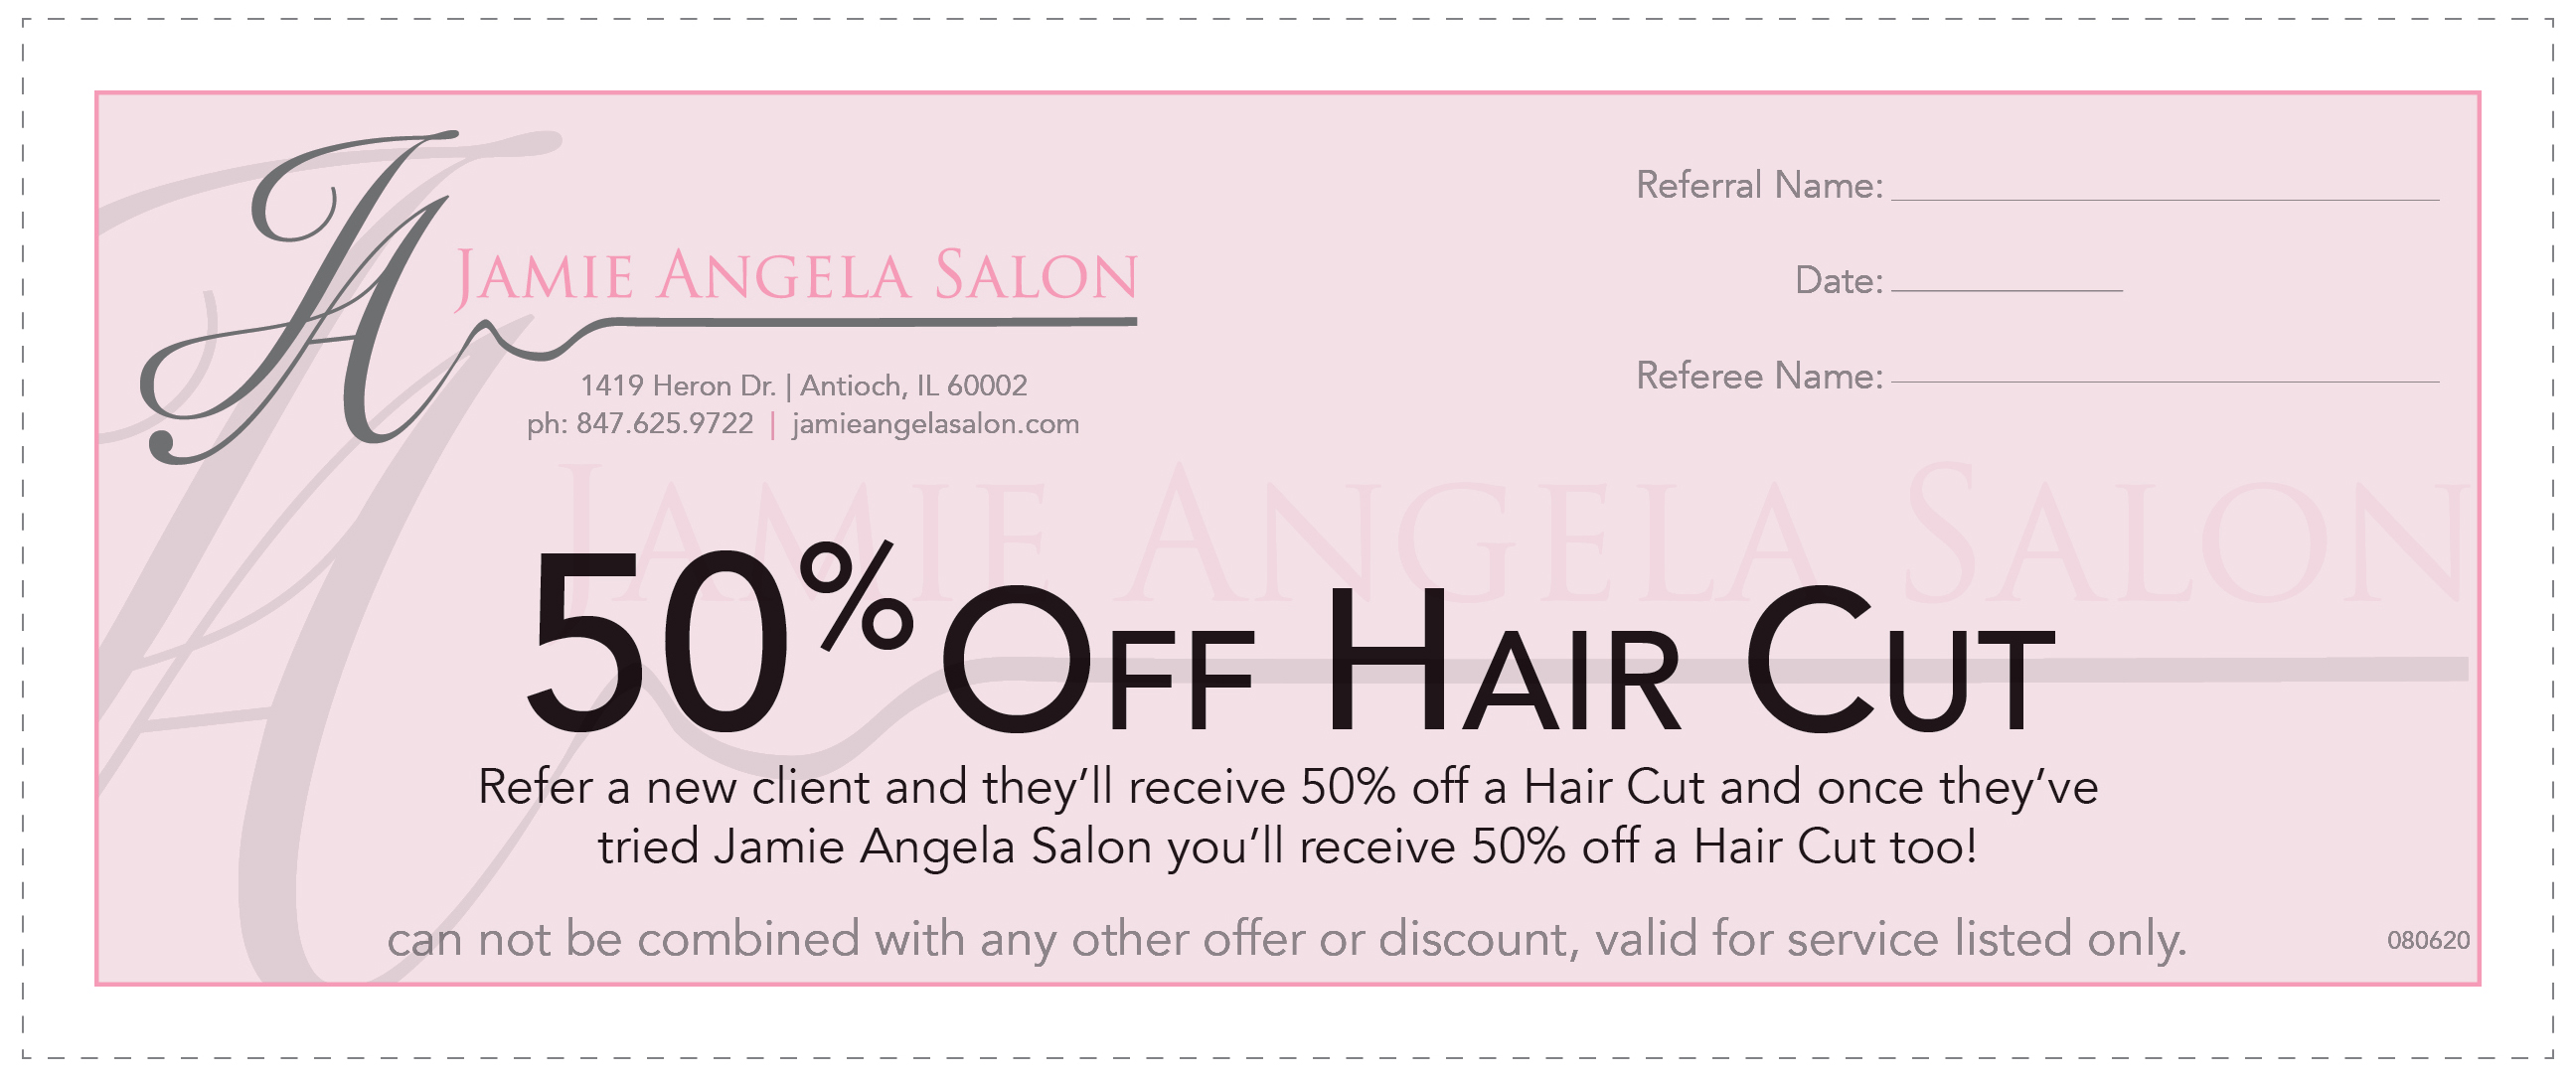 jamie-angela-salon-haircut-coupon